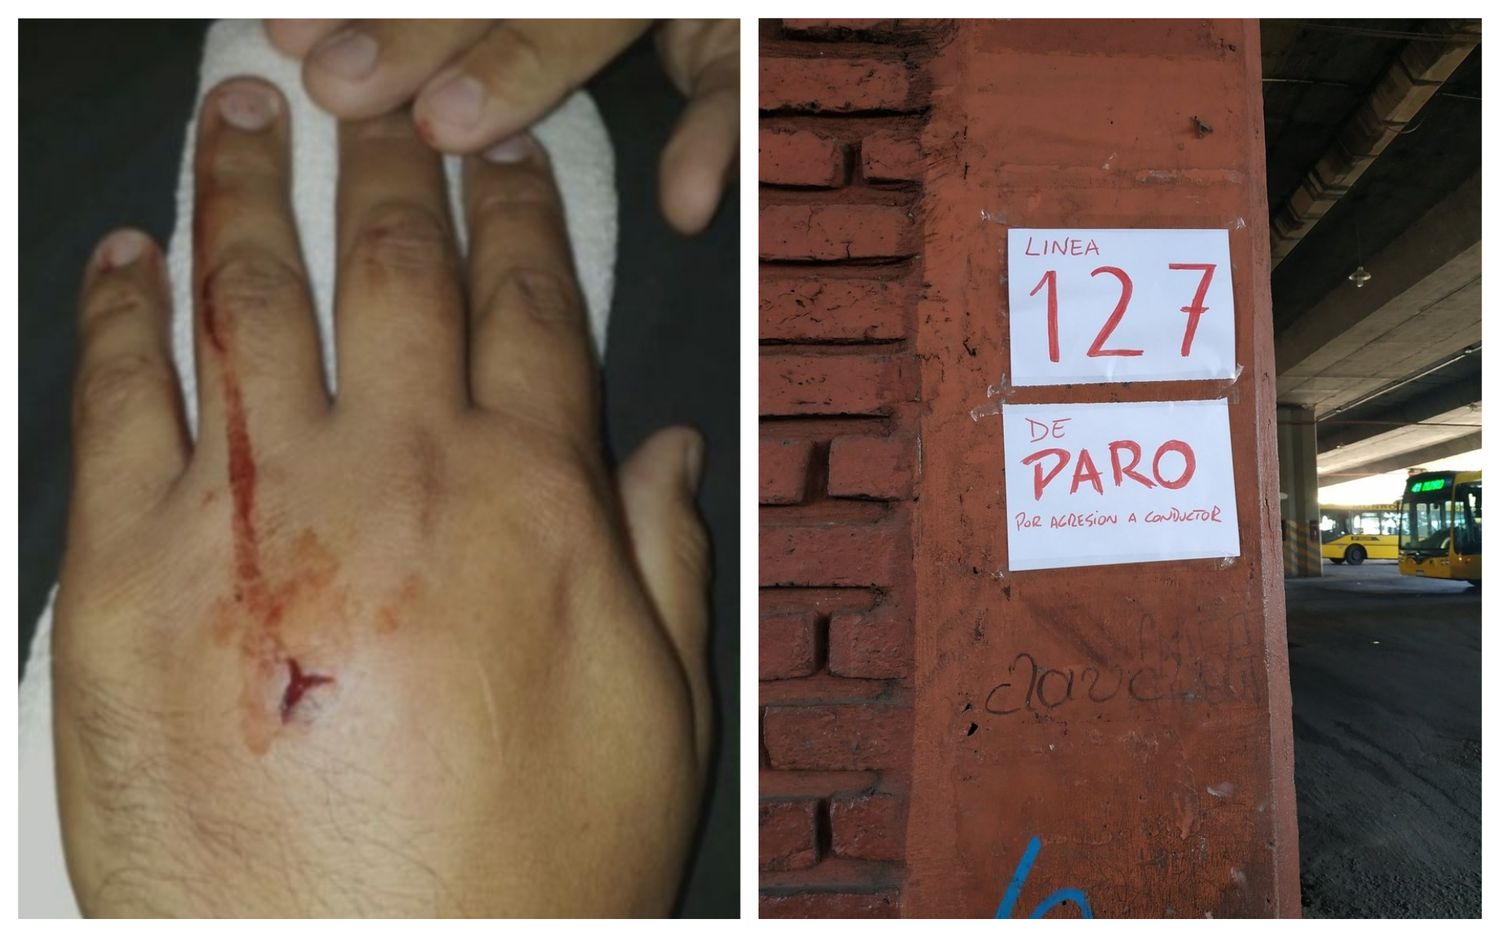 Asaltaron a un colectivero en San Martín y le dispararon en la mano: Hay 4 líneas de paro